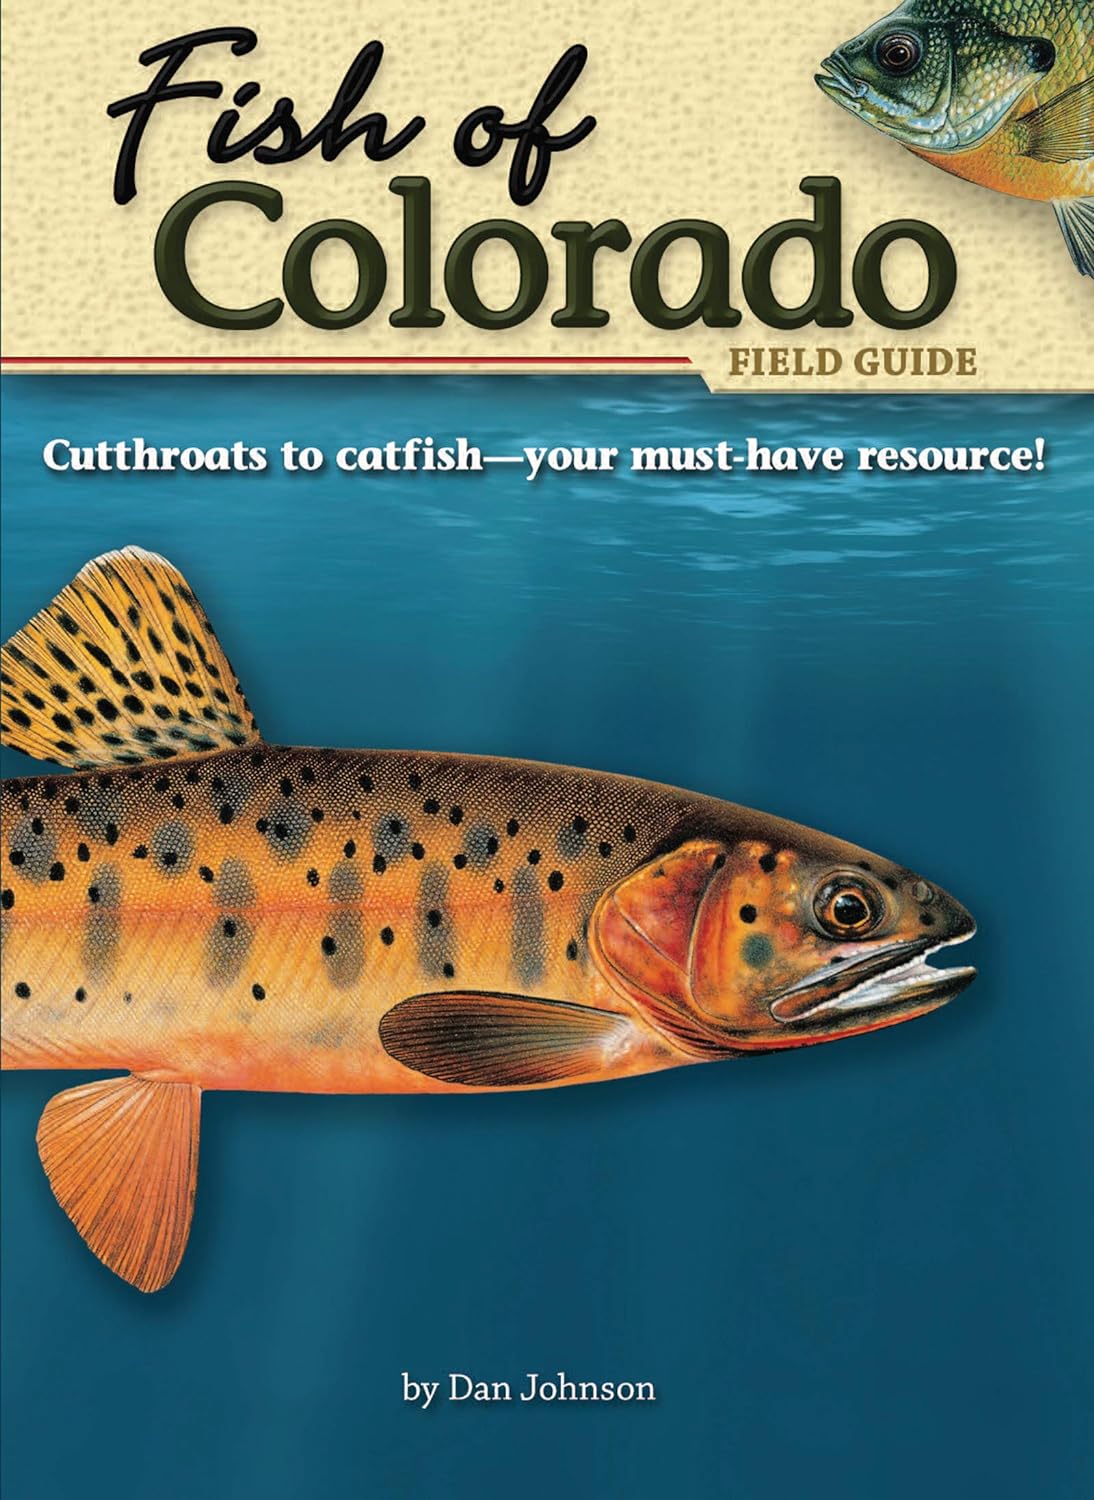 Fish of Colorado